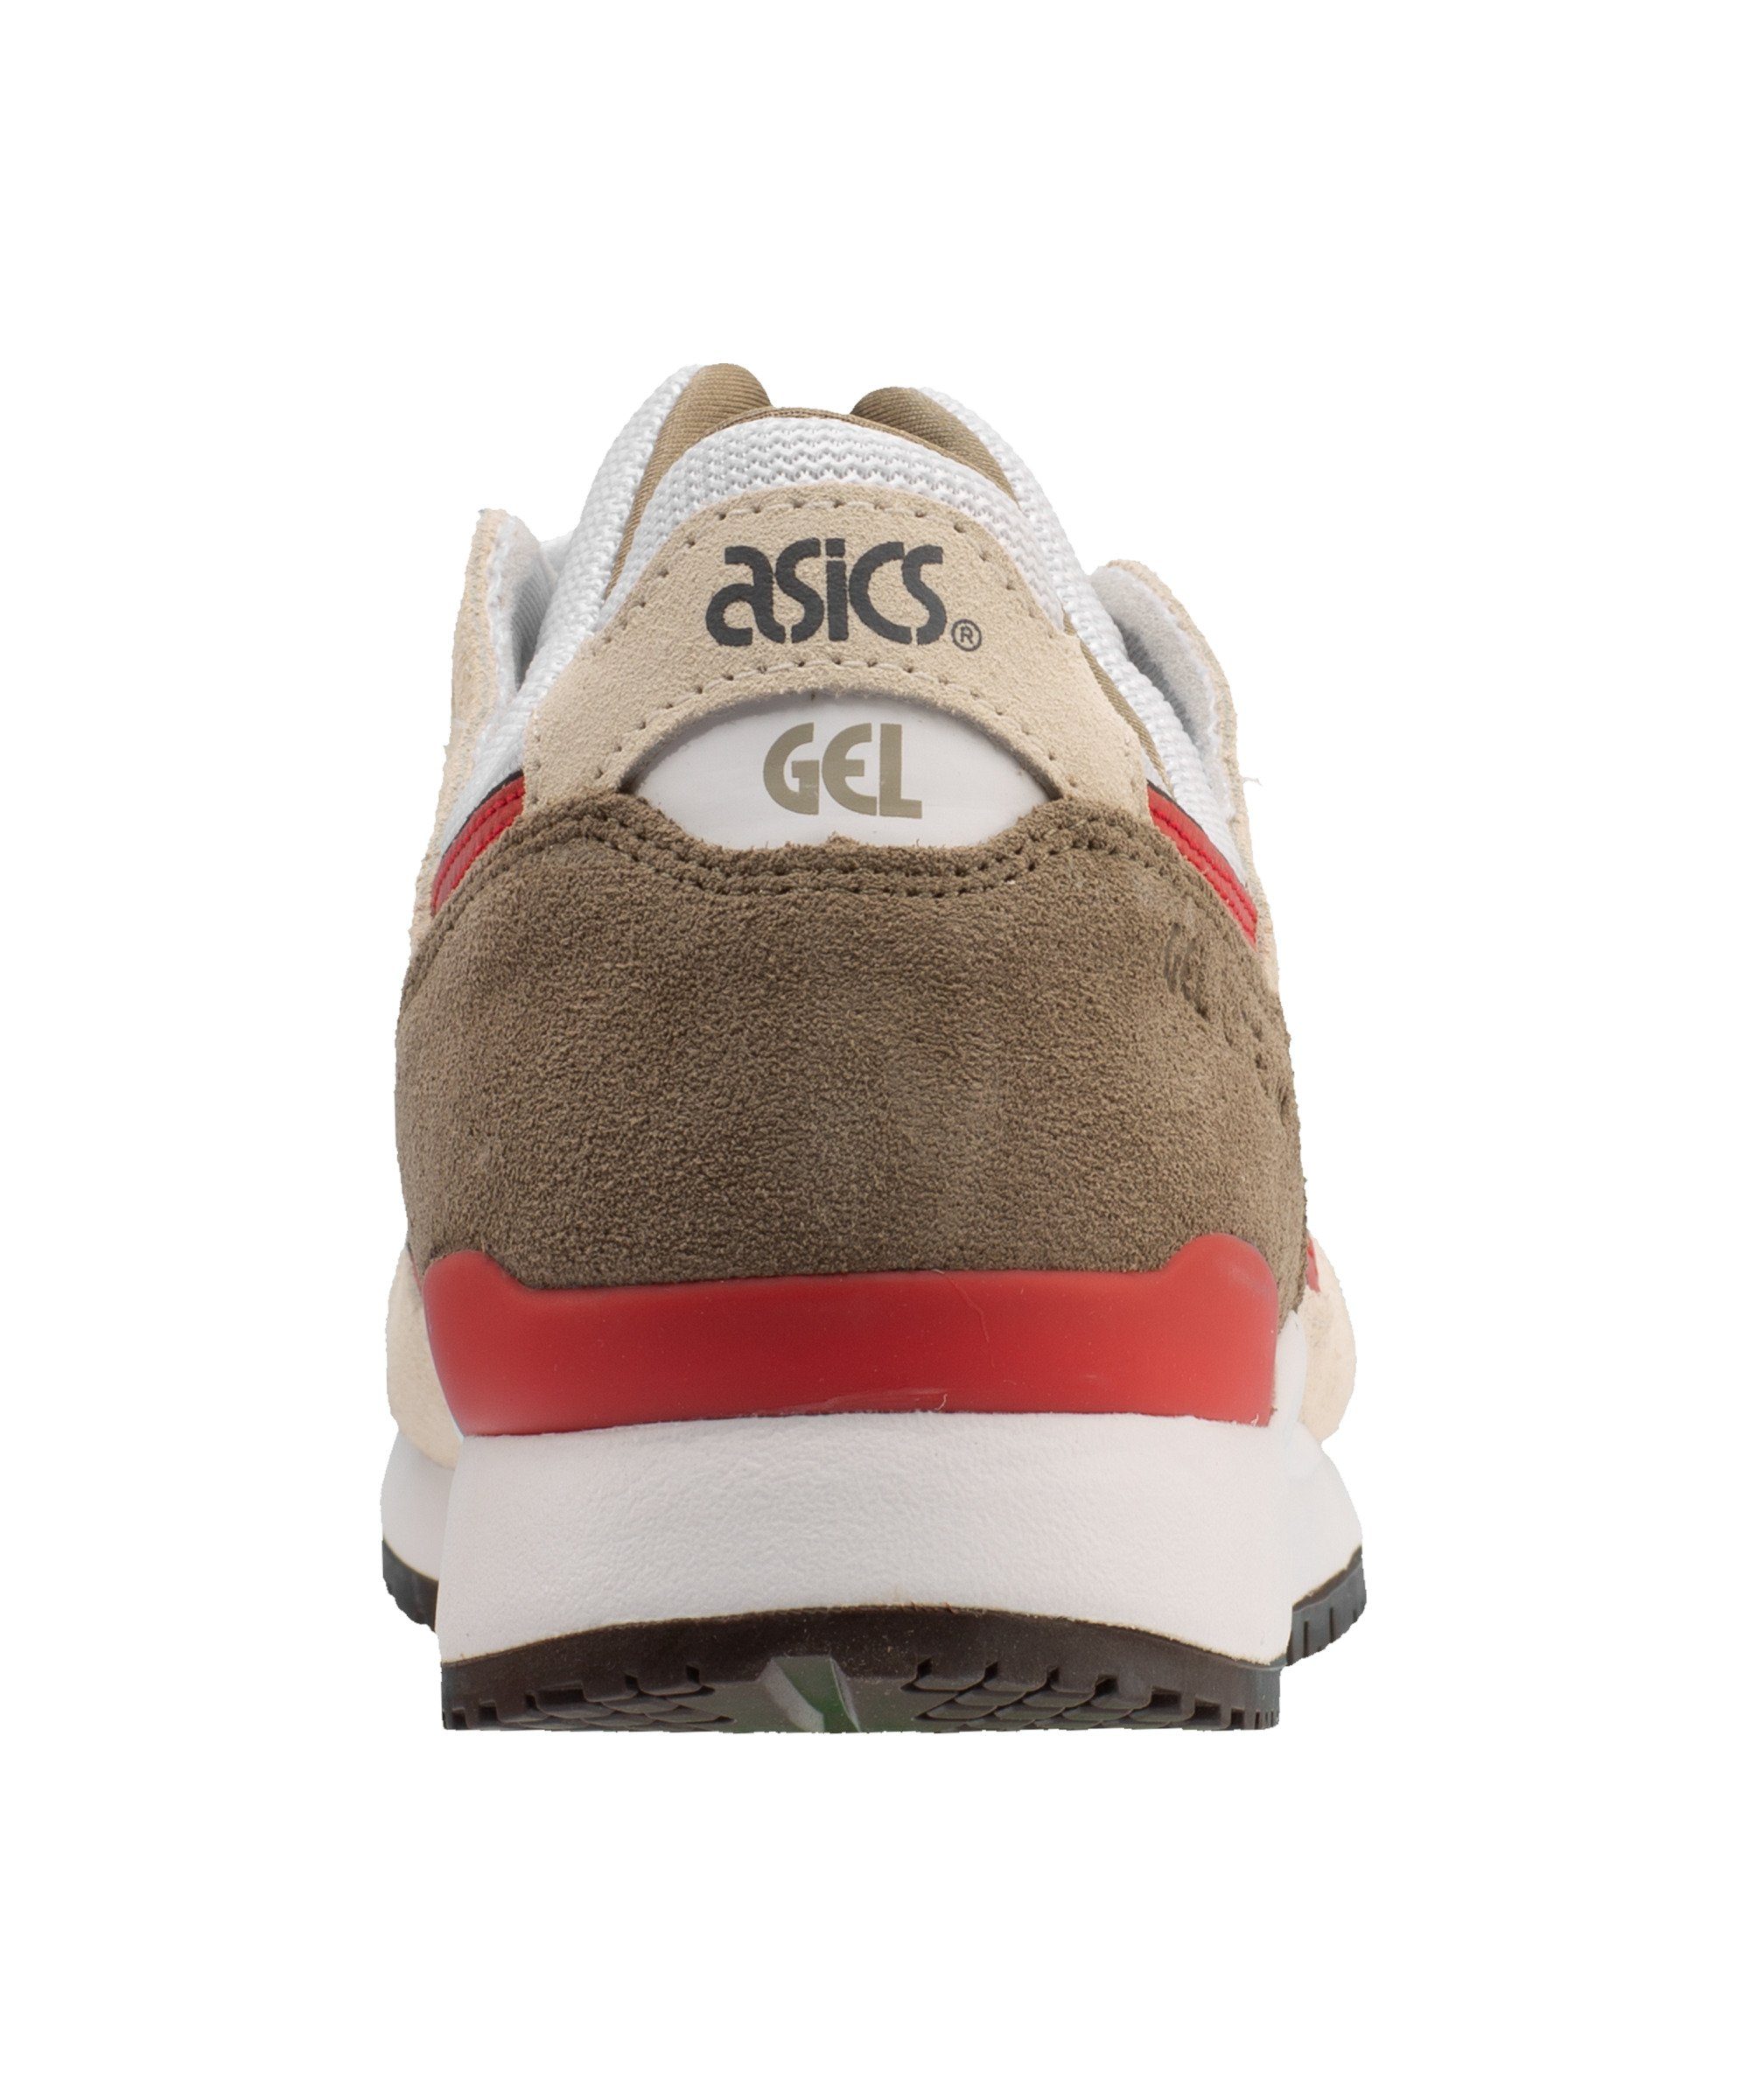 Asics Gel-Lyte III OG Sneaker graurot